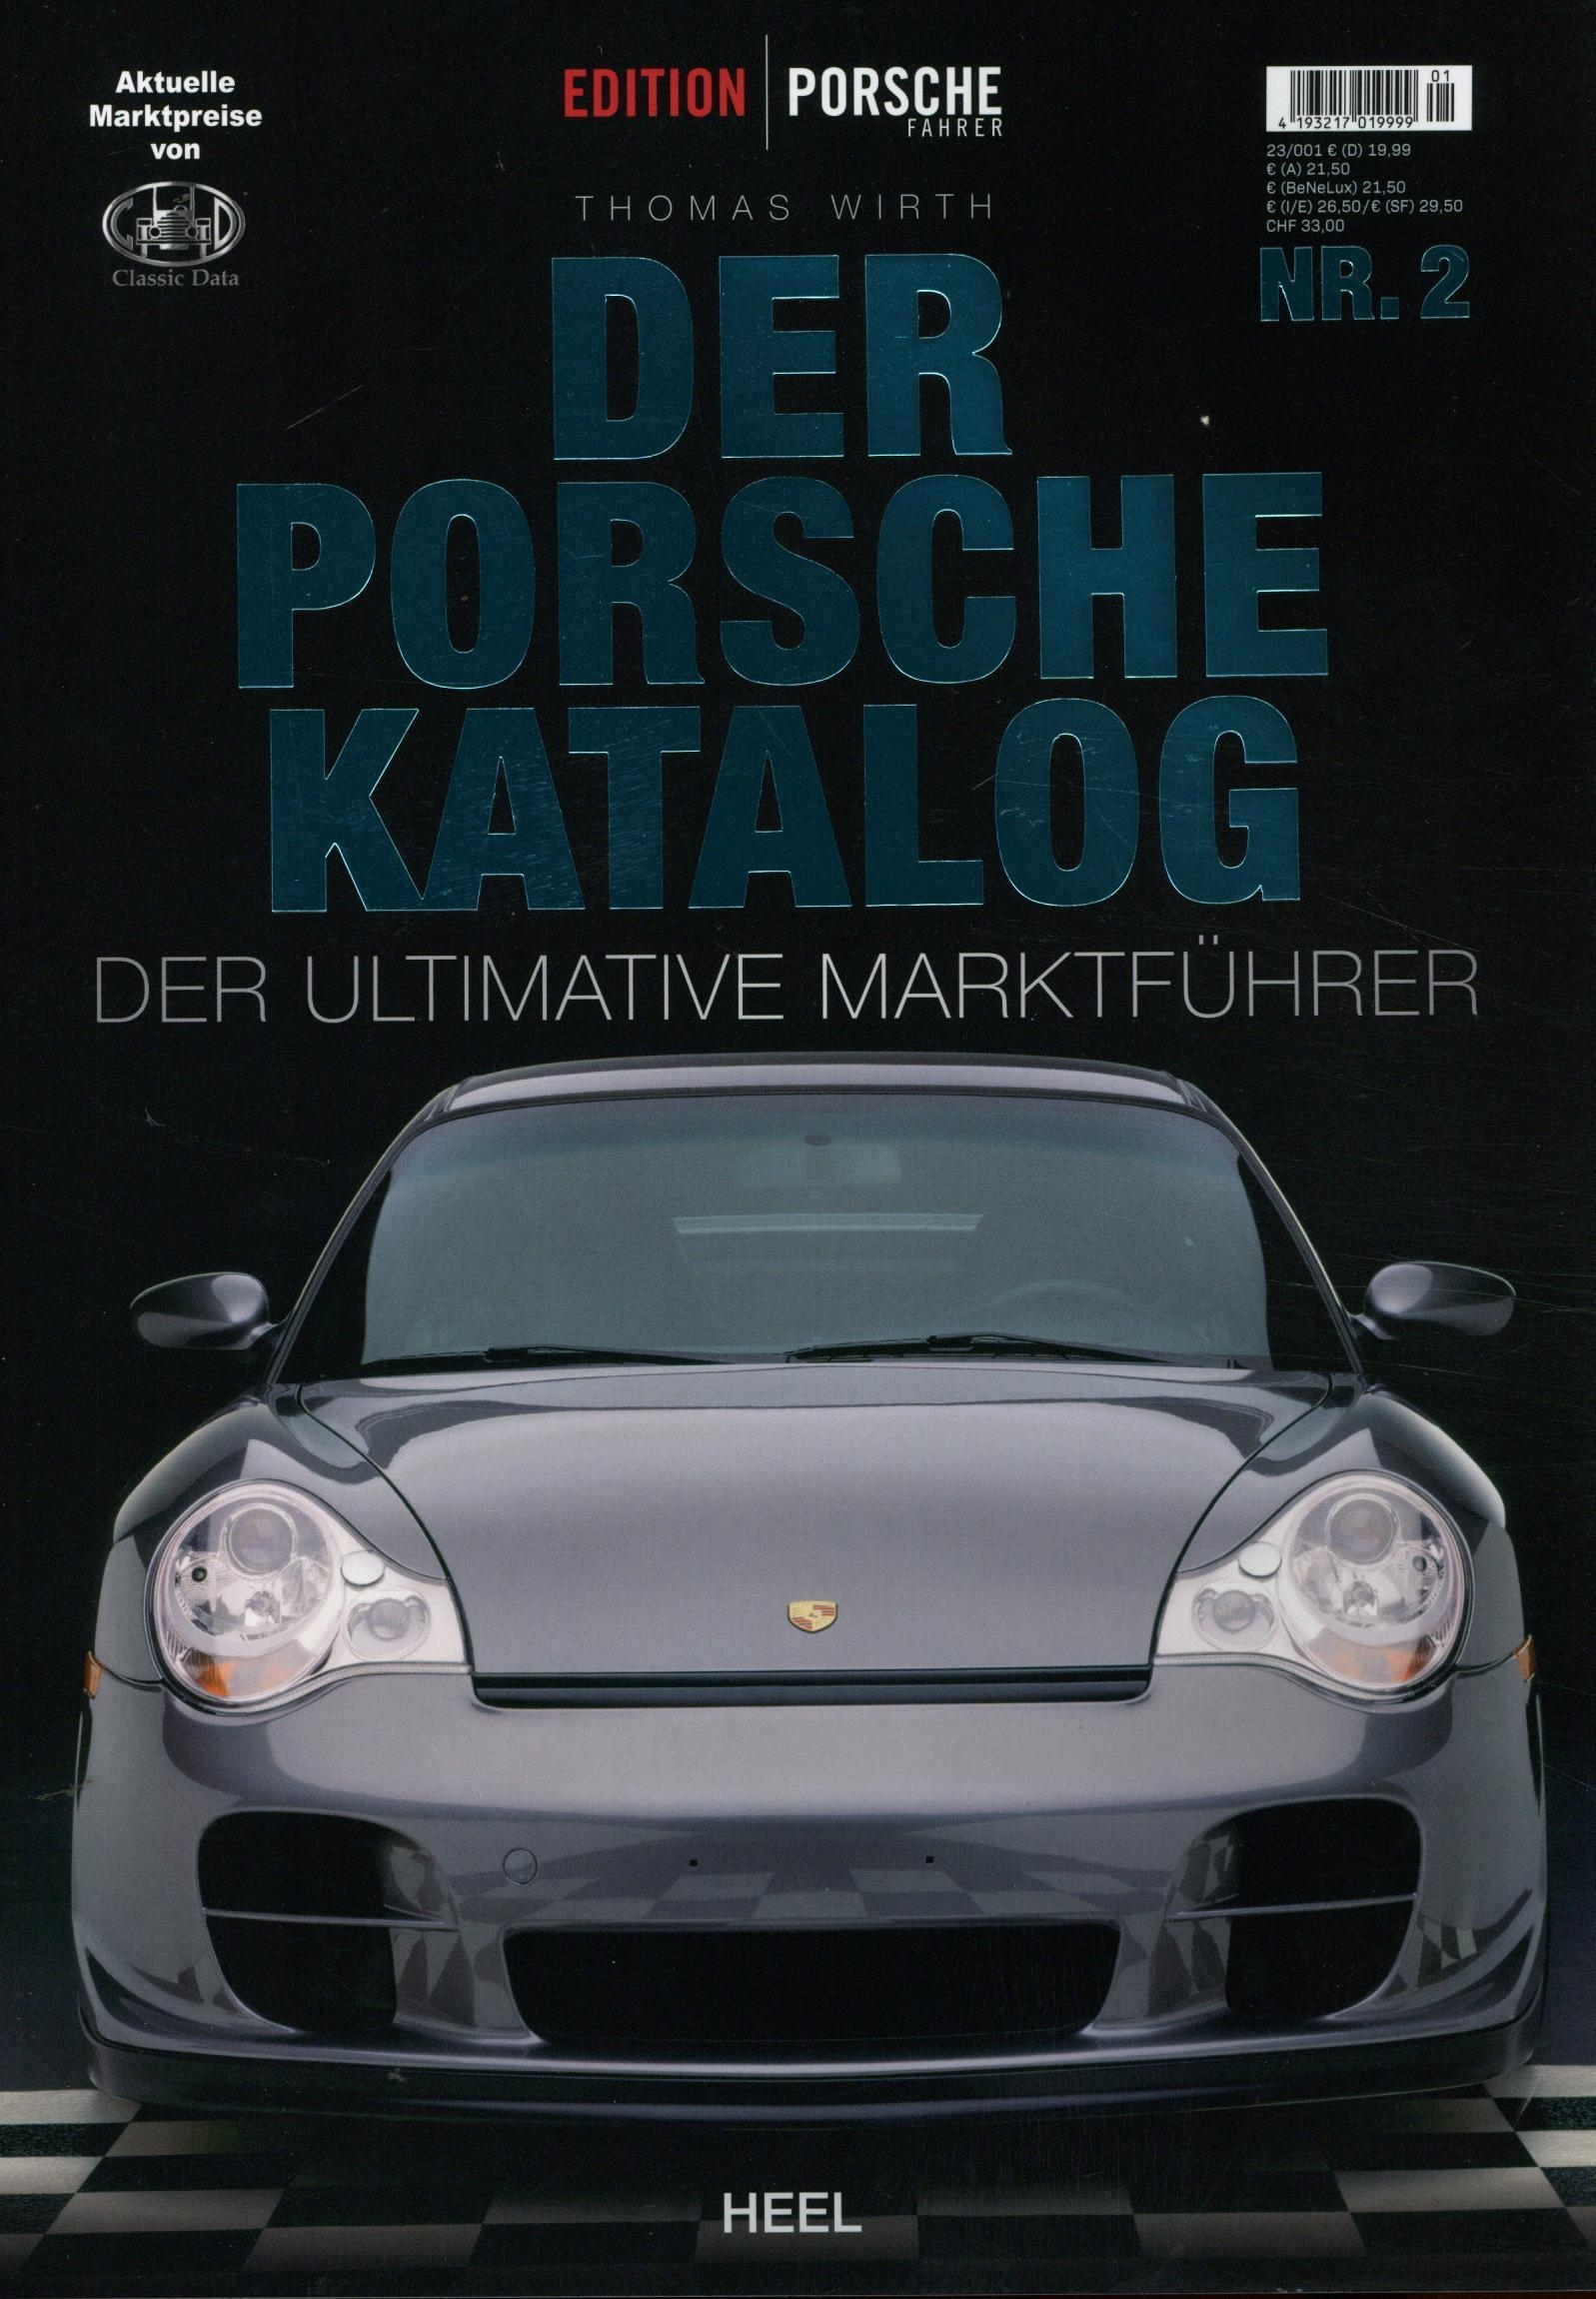 Porsche Katalog (DE)